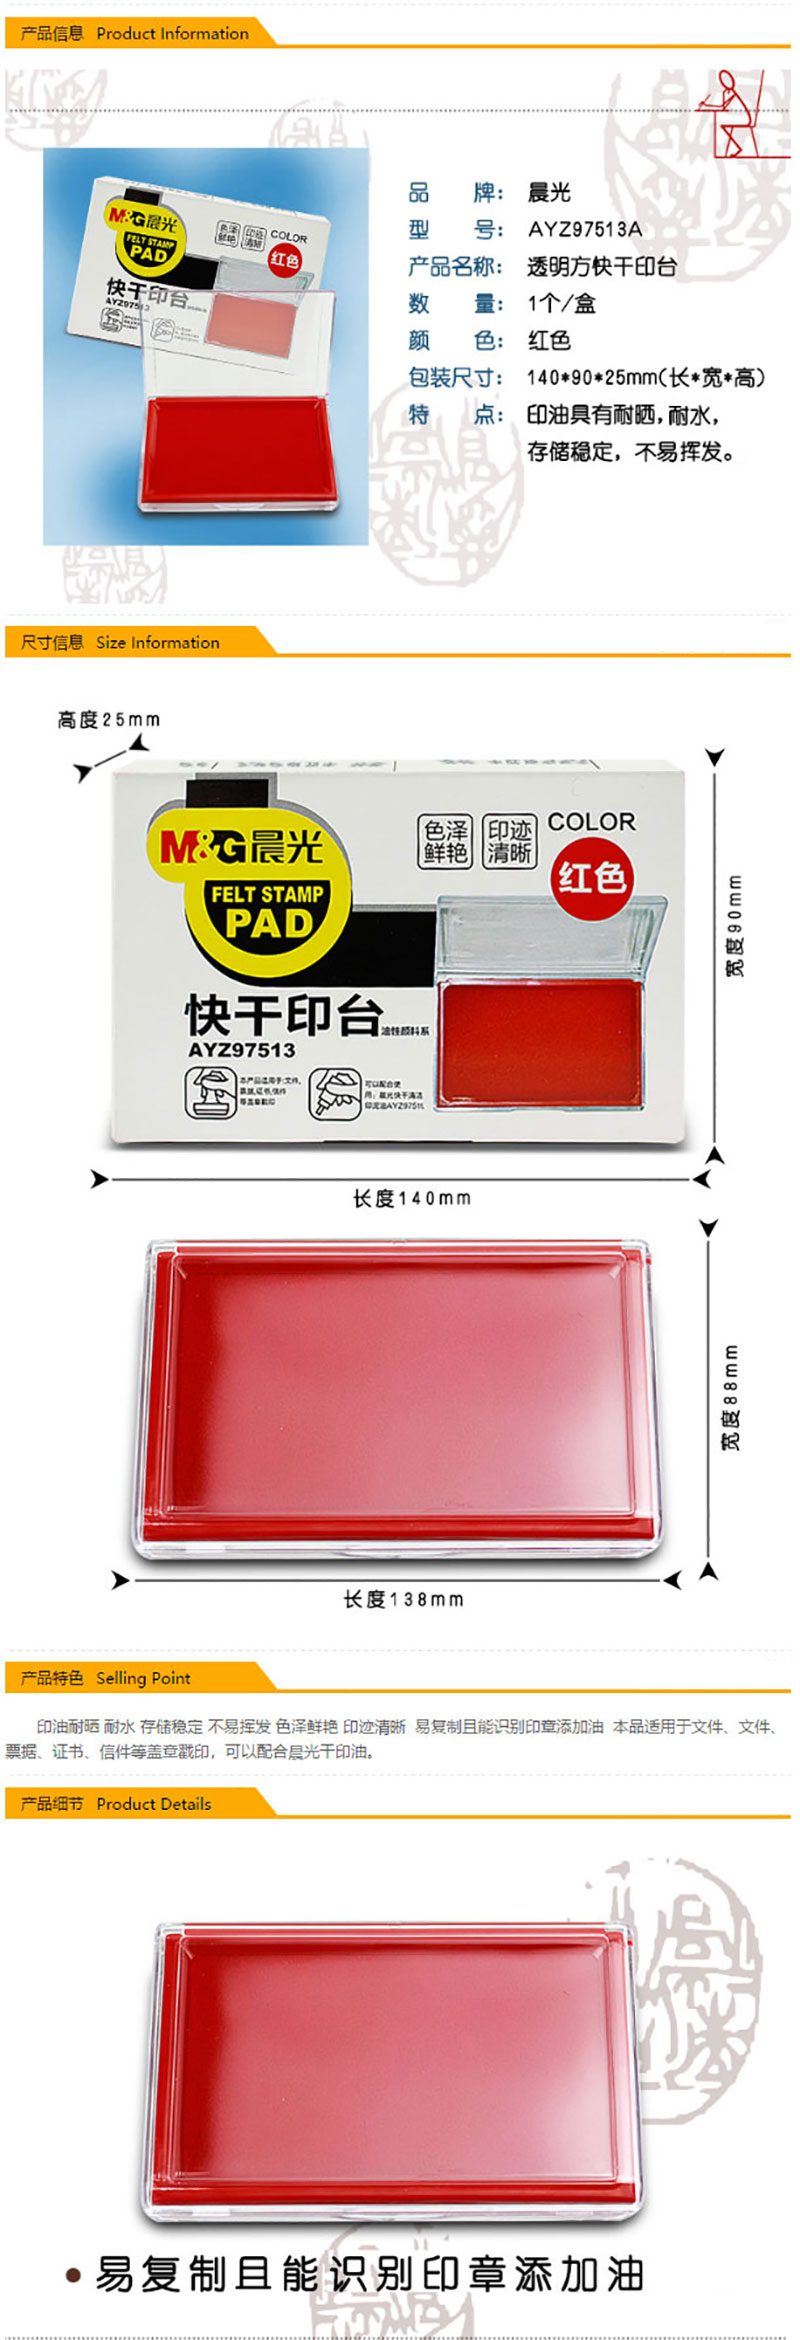 晨光(M&G)红色13888mm财务专用方形透明快干印台印泥 单个装AYZ97513